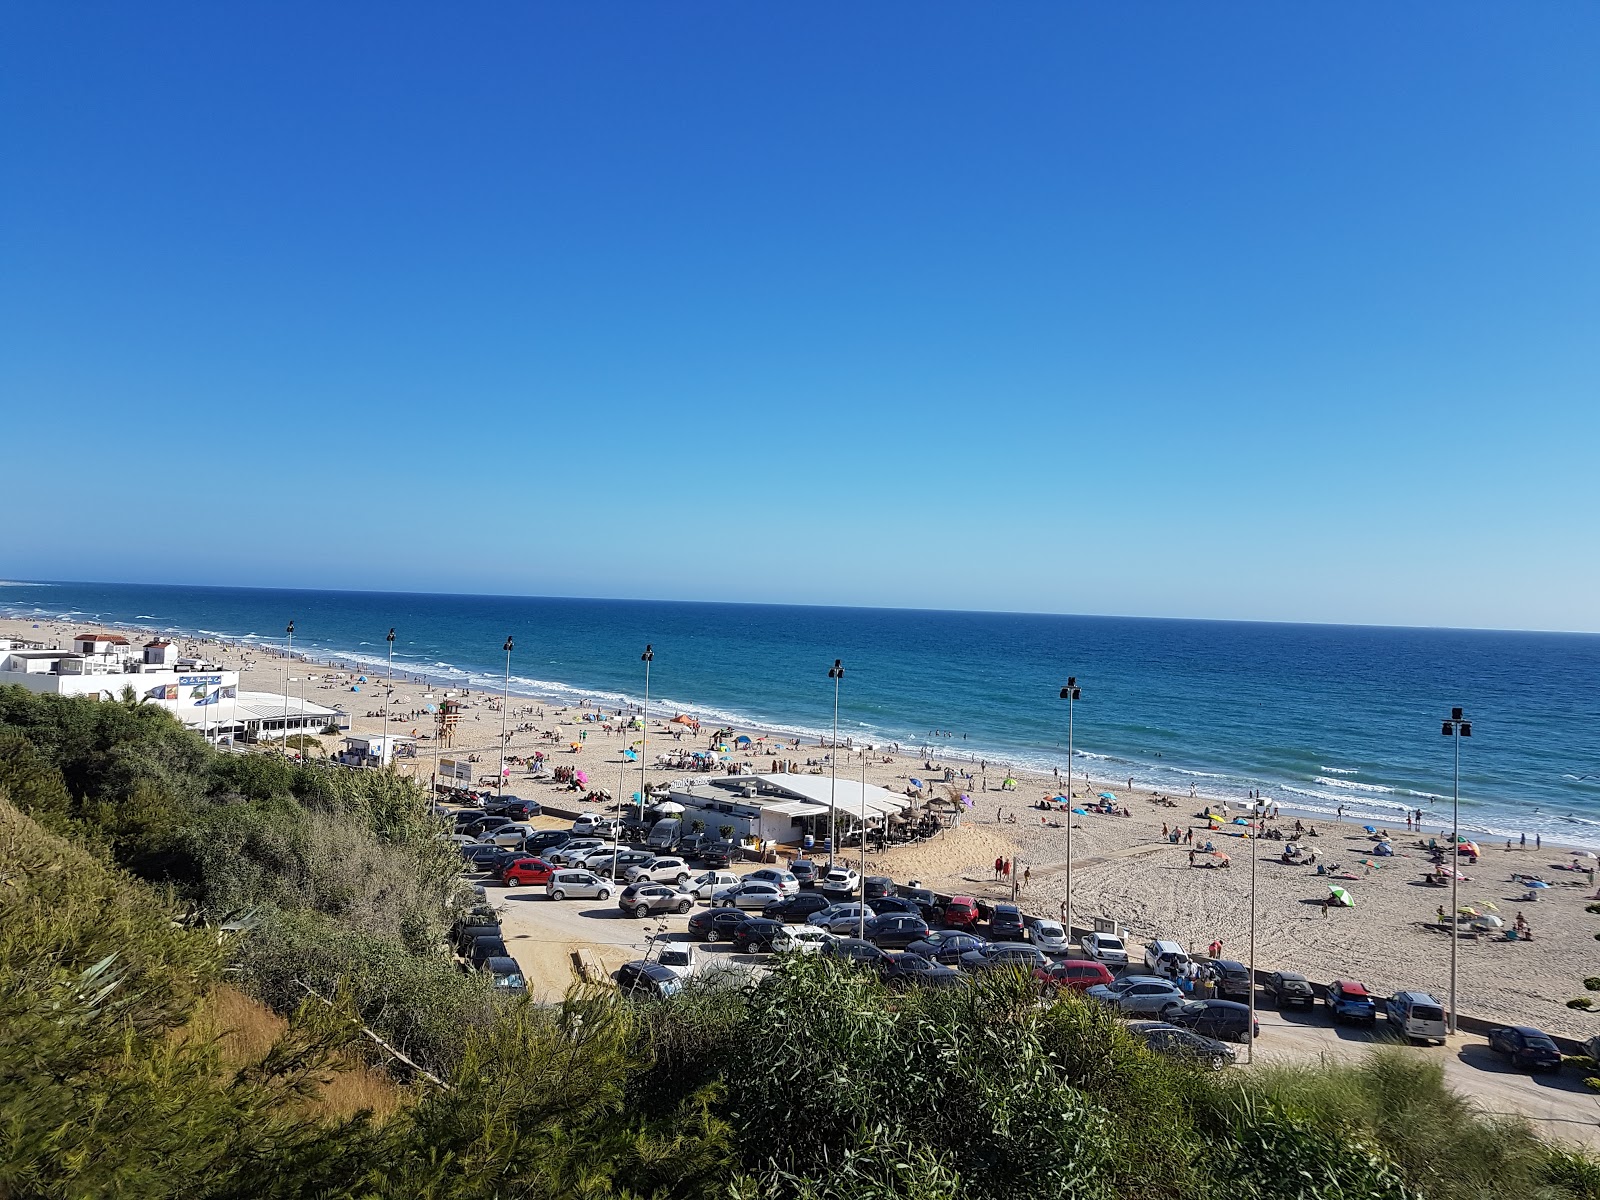 Playa de la Fontanilla En Conil'in fotoğrafı parlak kum yüzey ile